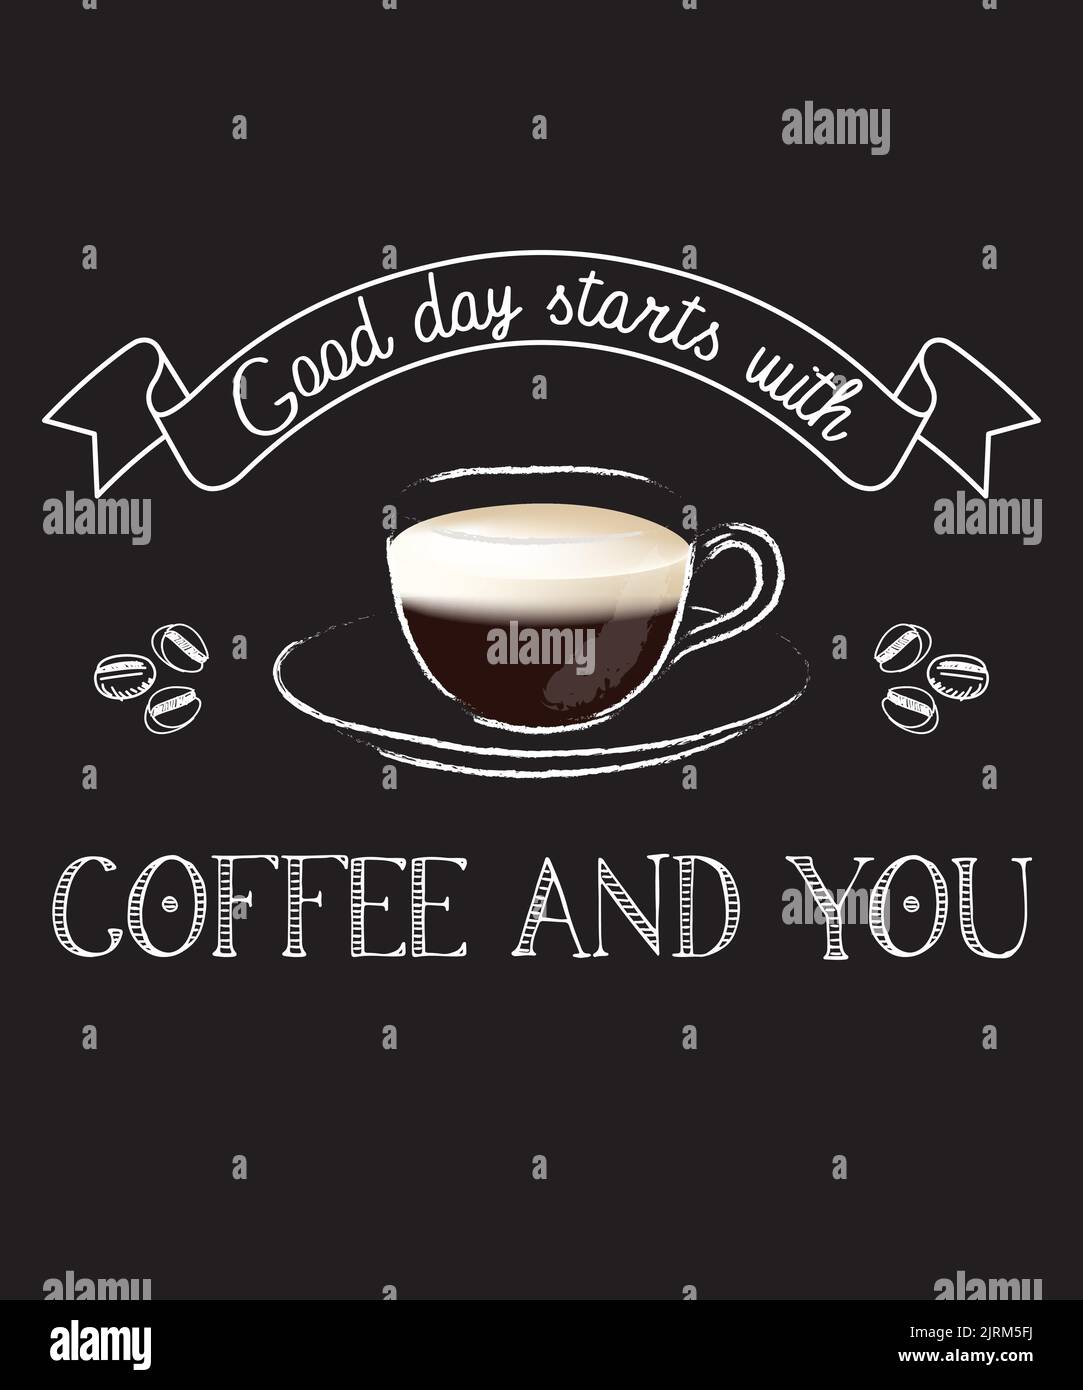 Le bon jour commence avec le café et vous - imprimé pour t-shirt, affiche, autocollant. Une proposition pour les vrais amateurs de café. Illustration de Vecteur